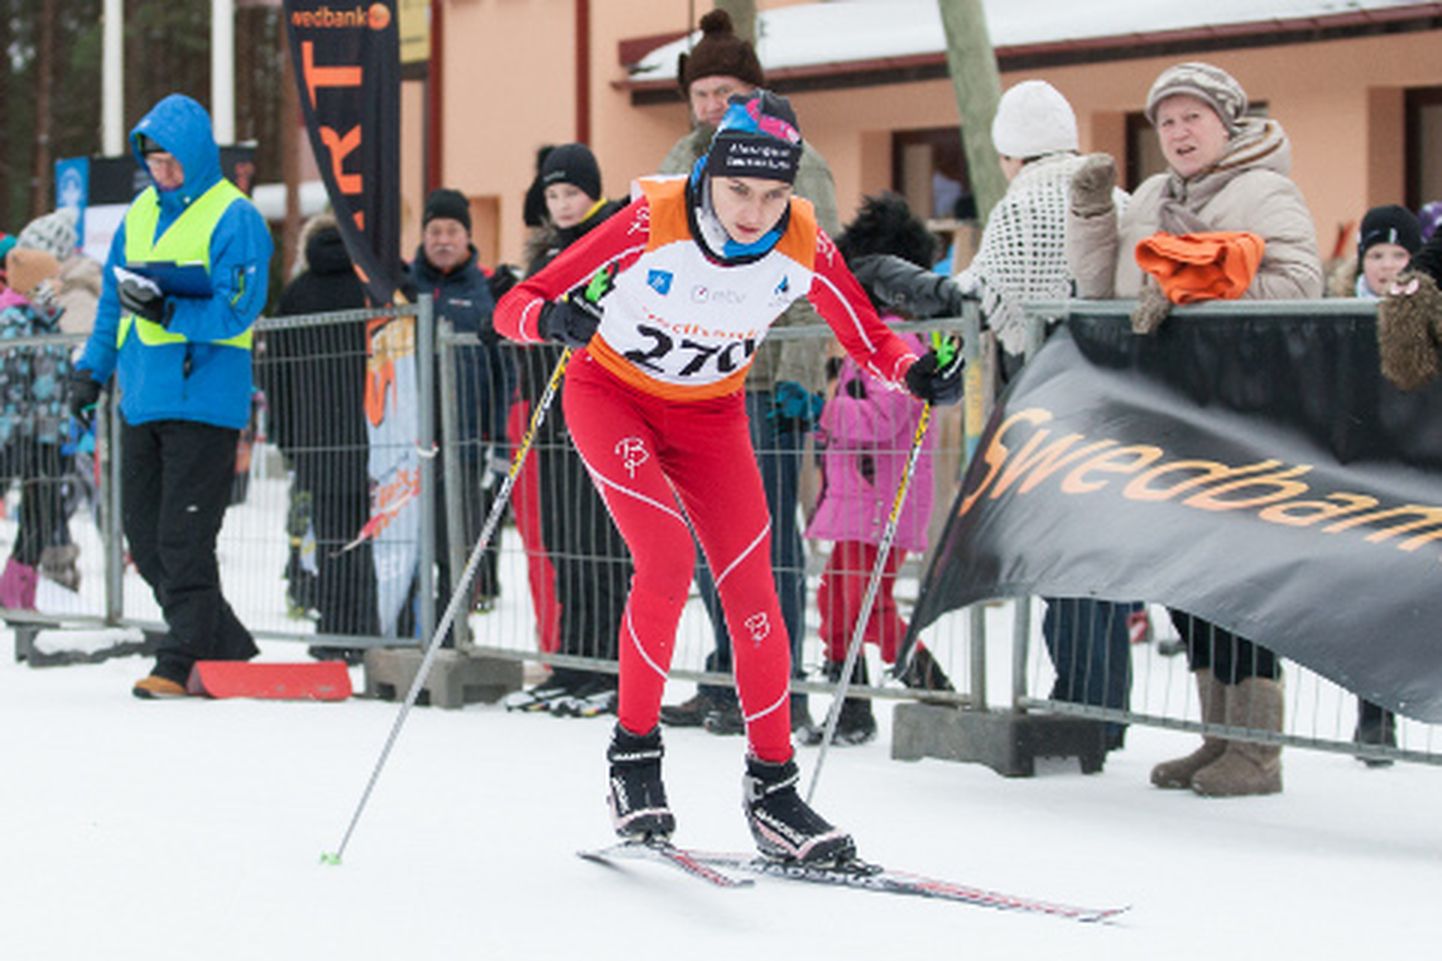 Läinud laupäeval Pannjärvel toimunud ETV noortesarja etapil võidutses kuni 14aastaste  seas Illuka valla tüdruk Aveli Uustalu, kes on selle vanuseklassi liider ka kahe etapi kokkuvõttes.